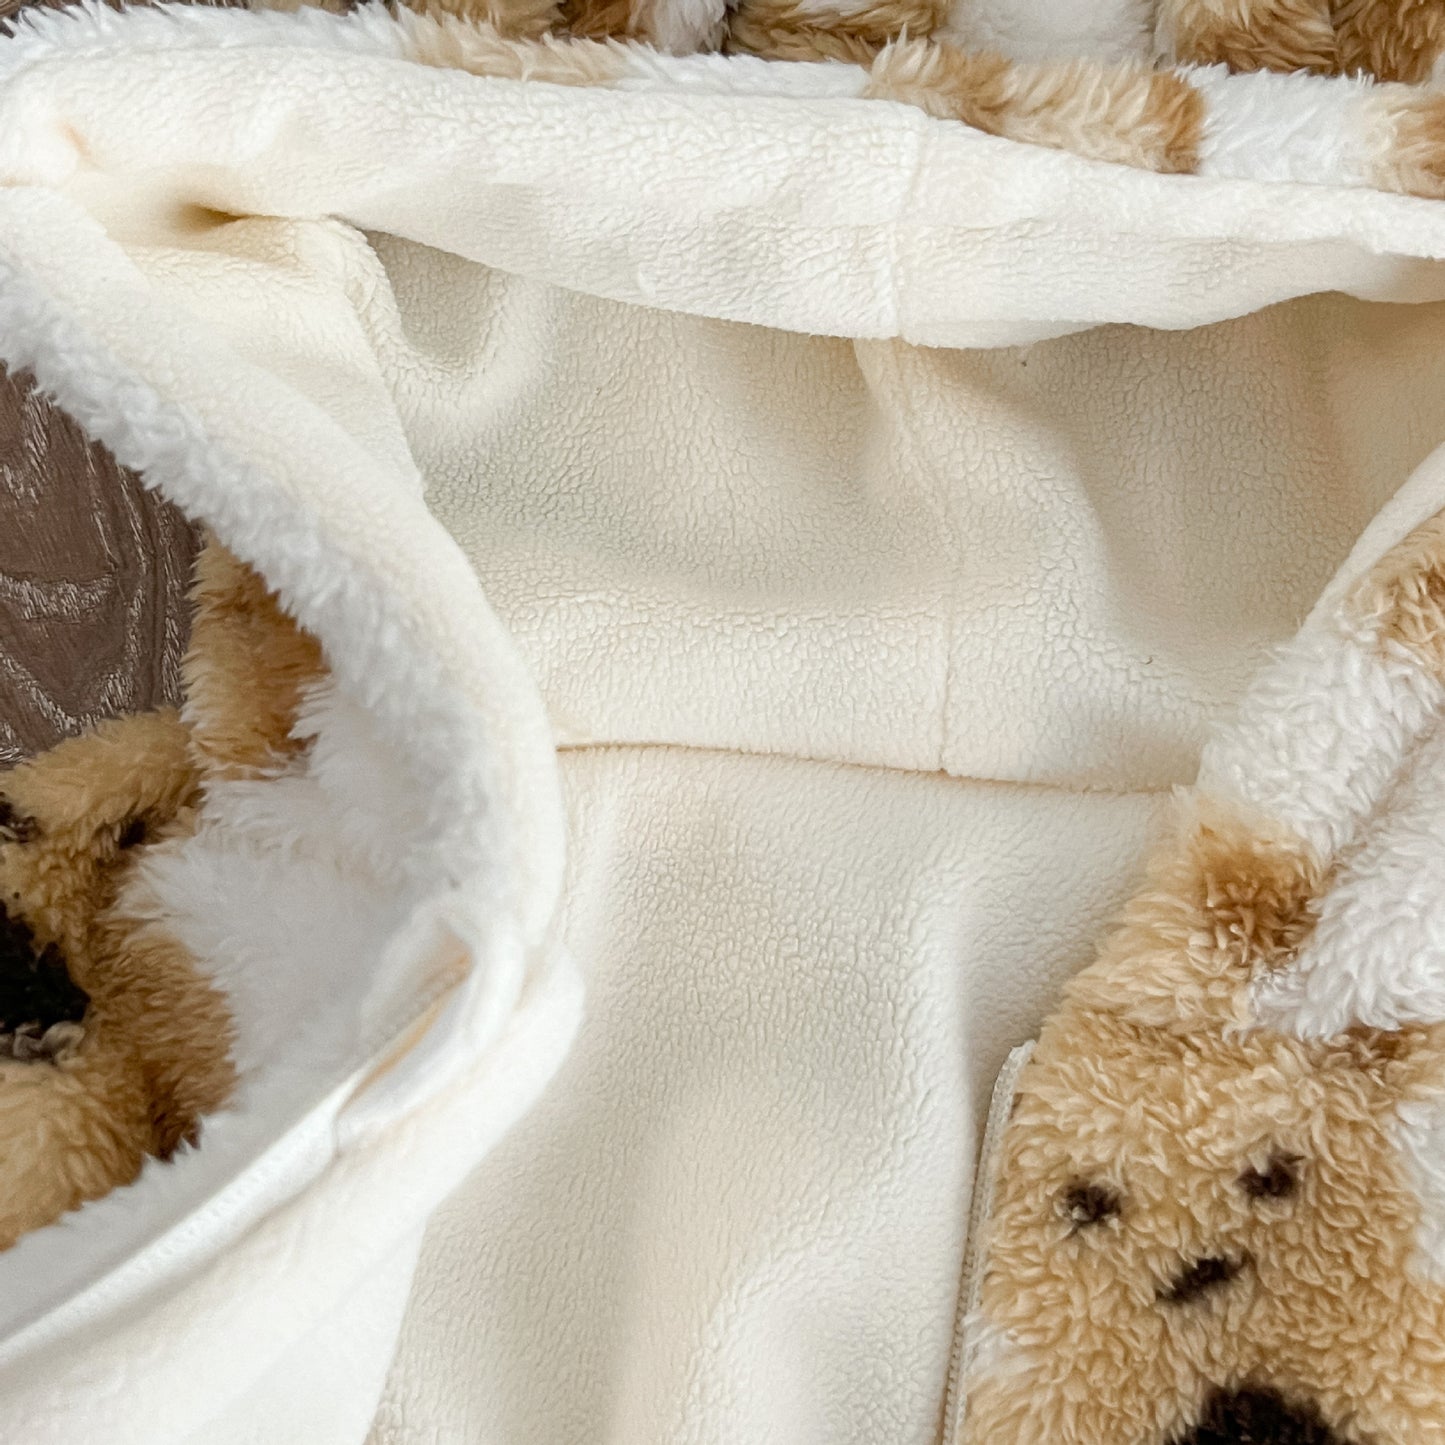 Baby Cute Bear Graphic Zipper Design Fleece Soft Winter Warm Jacket My Kids-USA